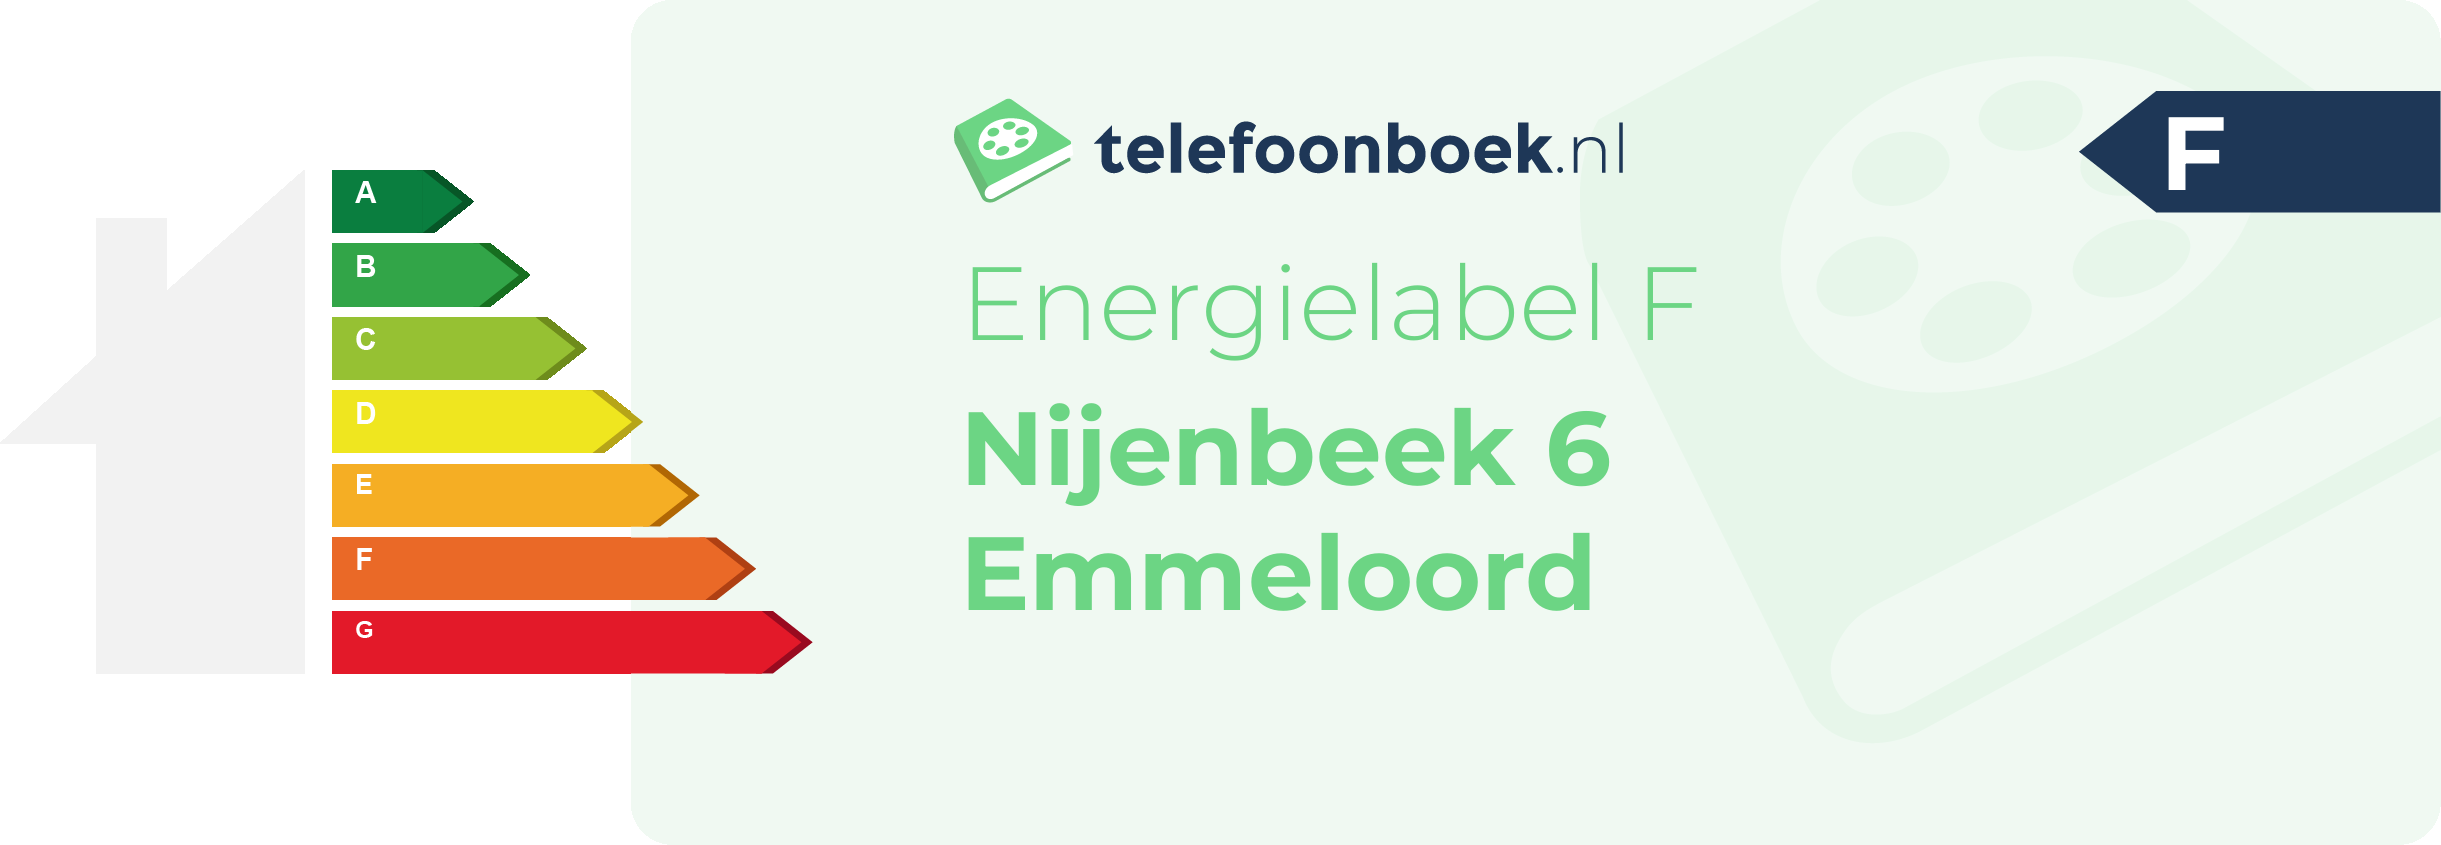 Energielabel Nijenbeek 6 Emmeloord